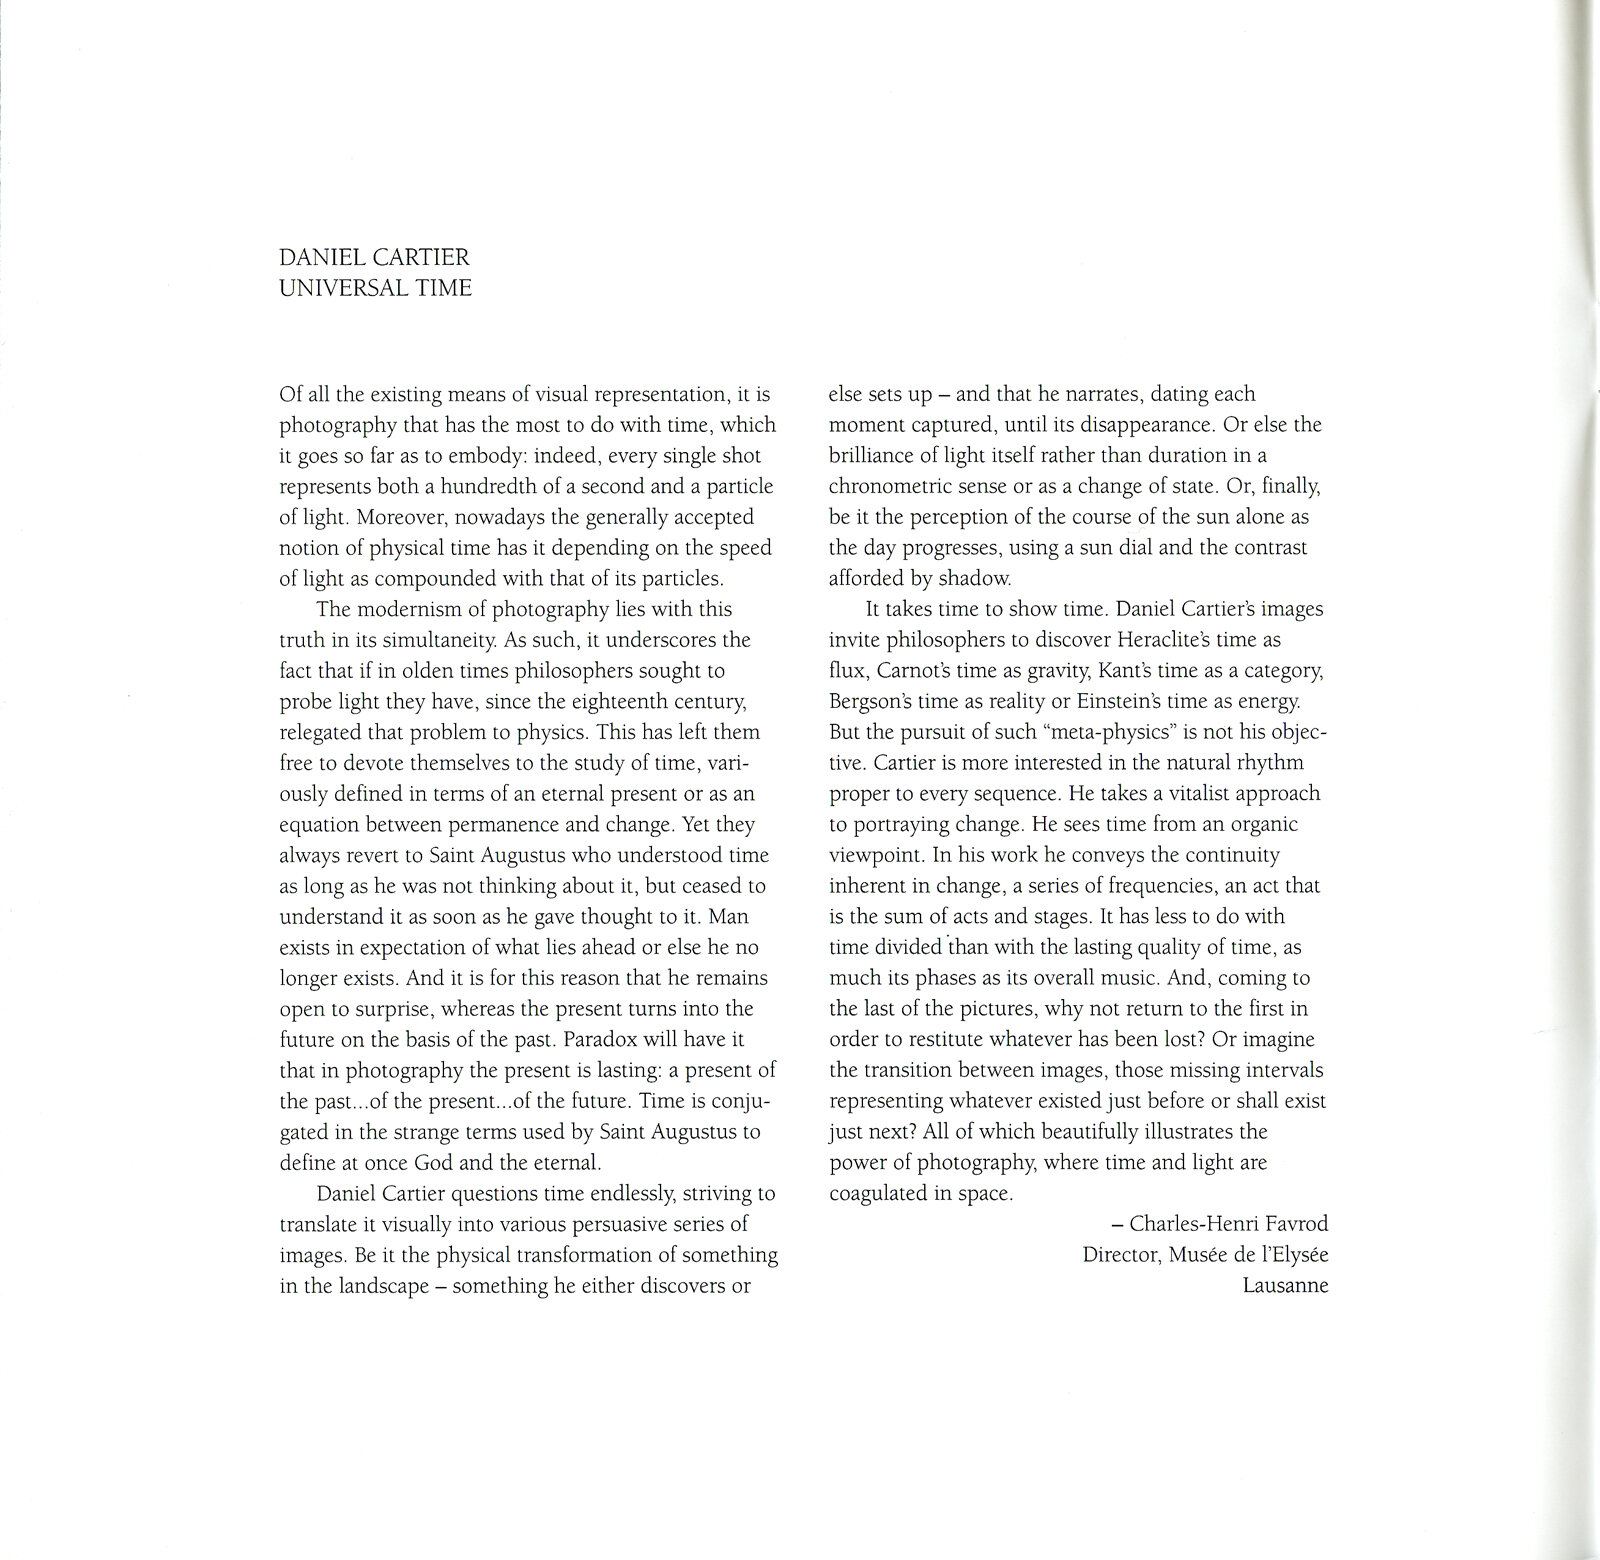 Texte intro Charles-Henri Favrod Musée de l'Elysee Lausanne 1995